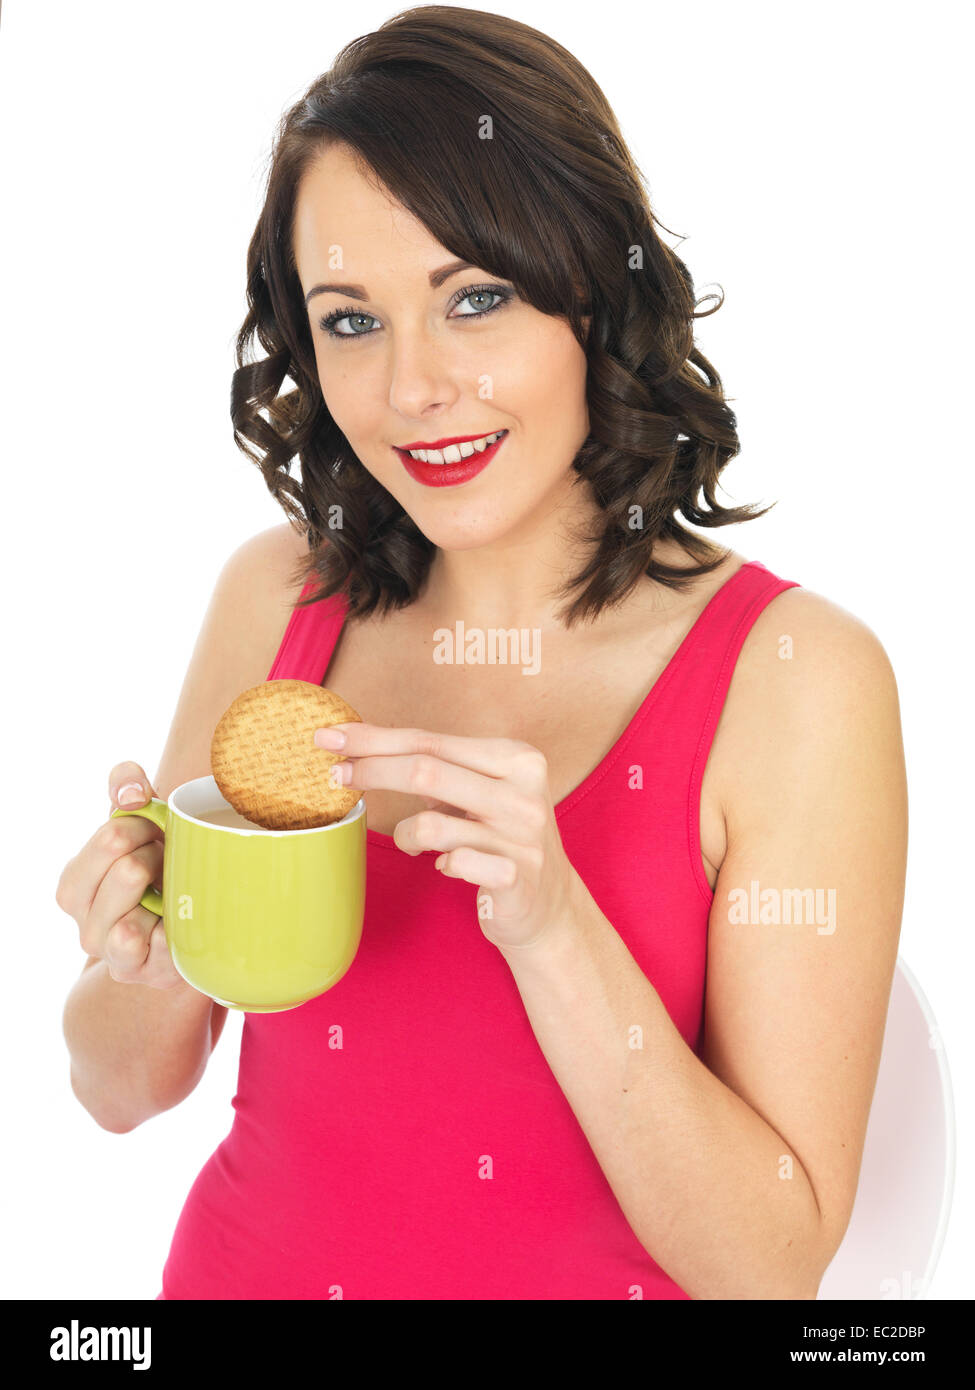 Sicher glückliche junge Frau Tauchen oder Dunking einen Keks in eine Tasse Tee oder Kaffee trinken entspannende Pause Isoliert gegen einen weißen Hintergrund Stockfoto